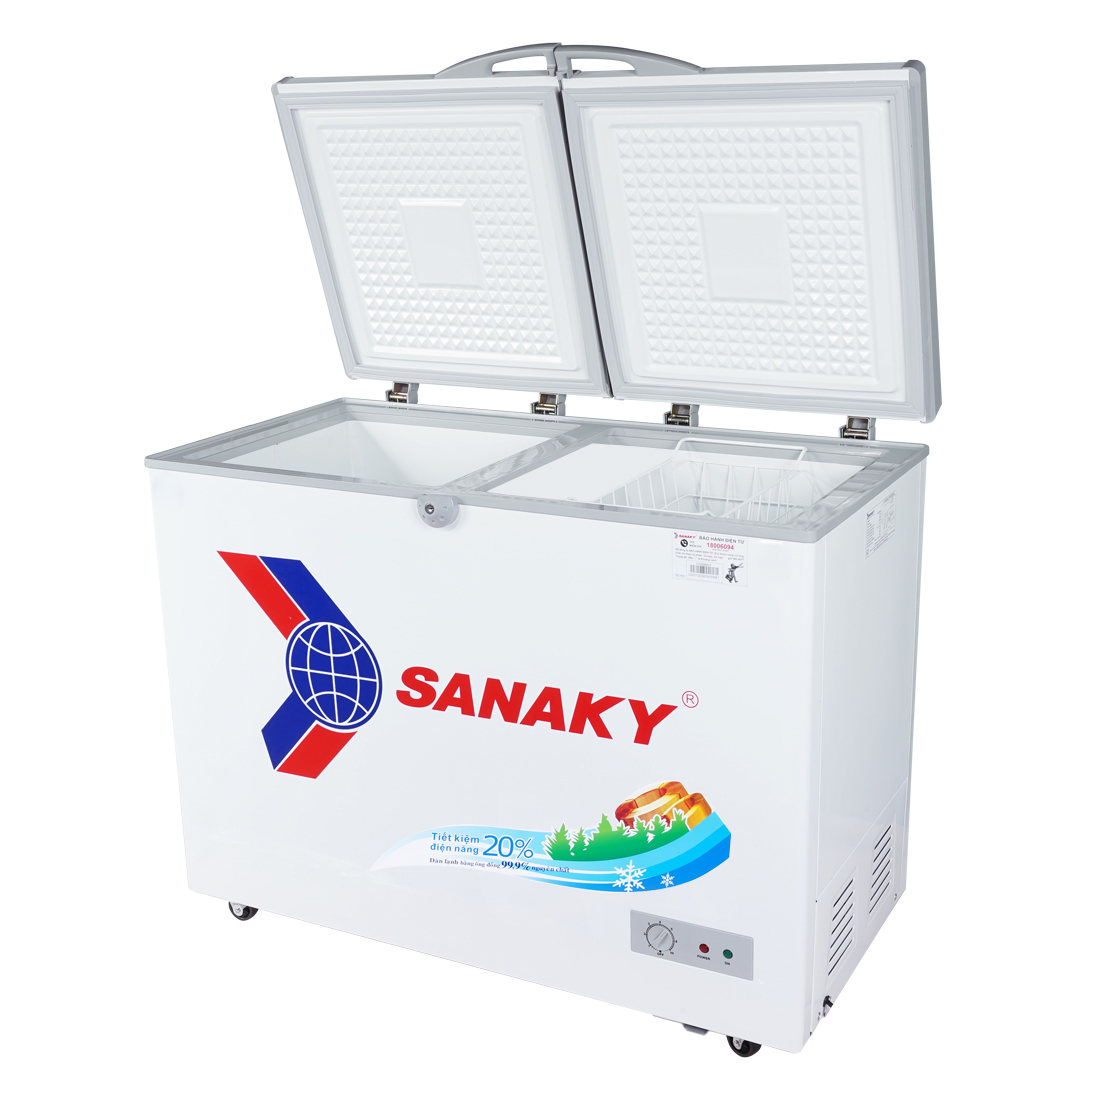 Tủ Đông Sanaky VH-2899A1